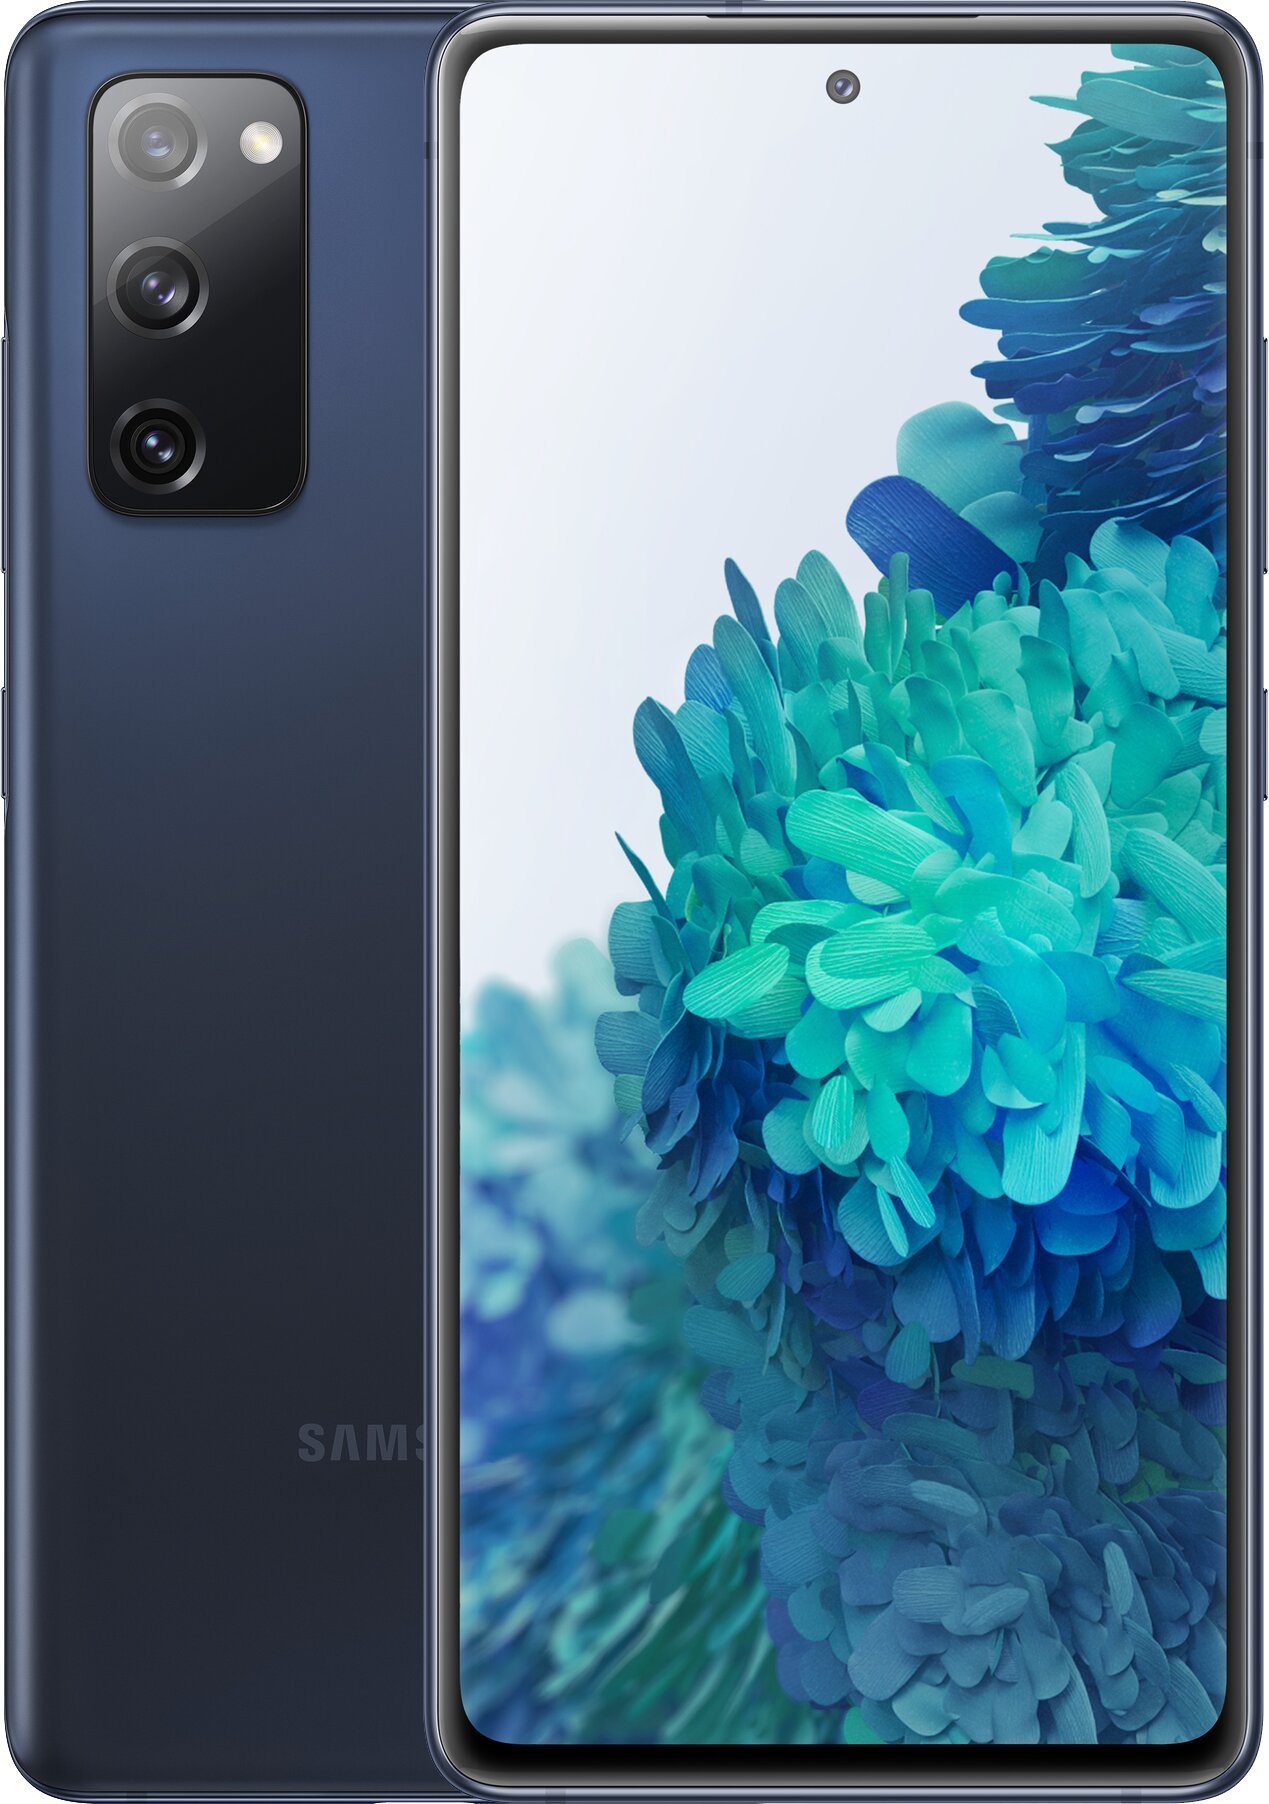 Samsung Galaxy S20 FE blue Snapdragon